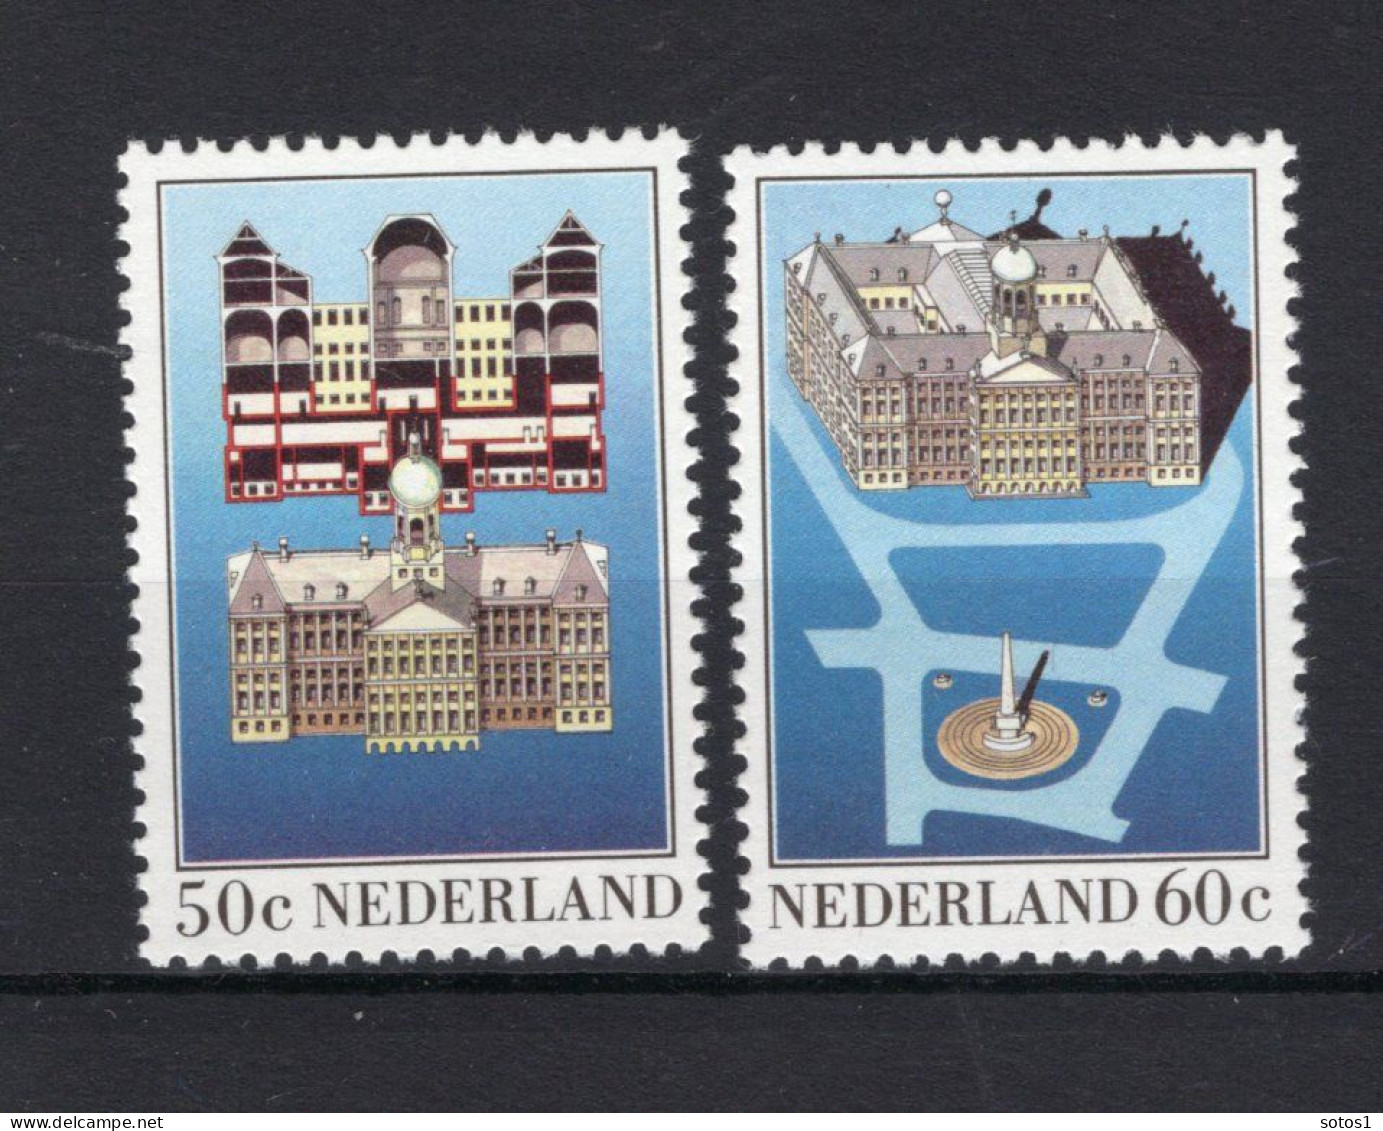 NEDERLAND 1273/1274 MNH 1982 - Paleis Op De Dam - Ongebruikt